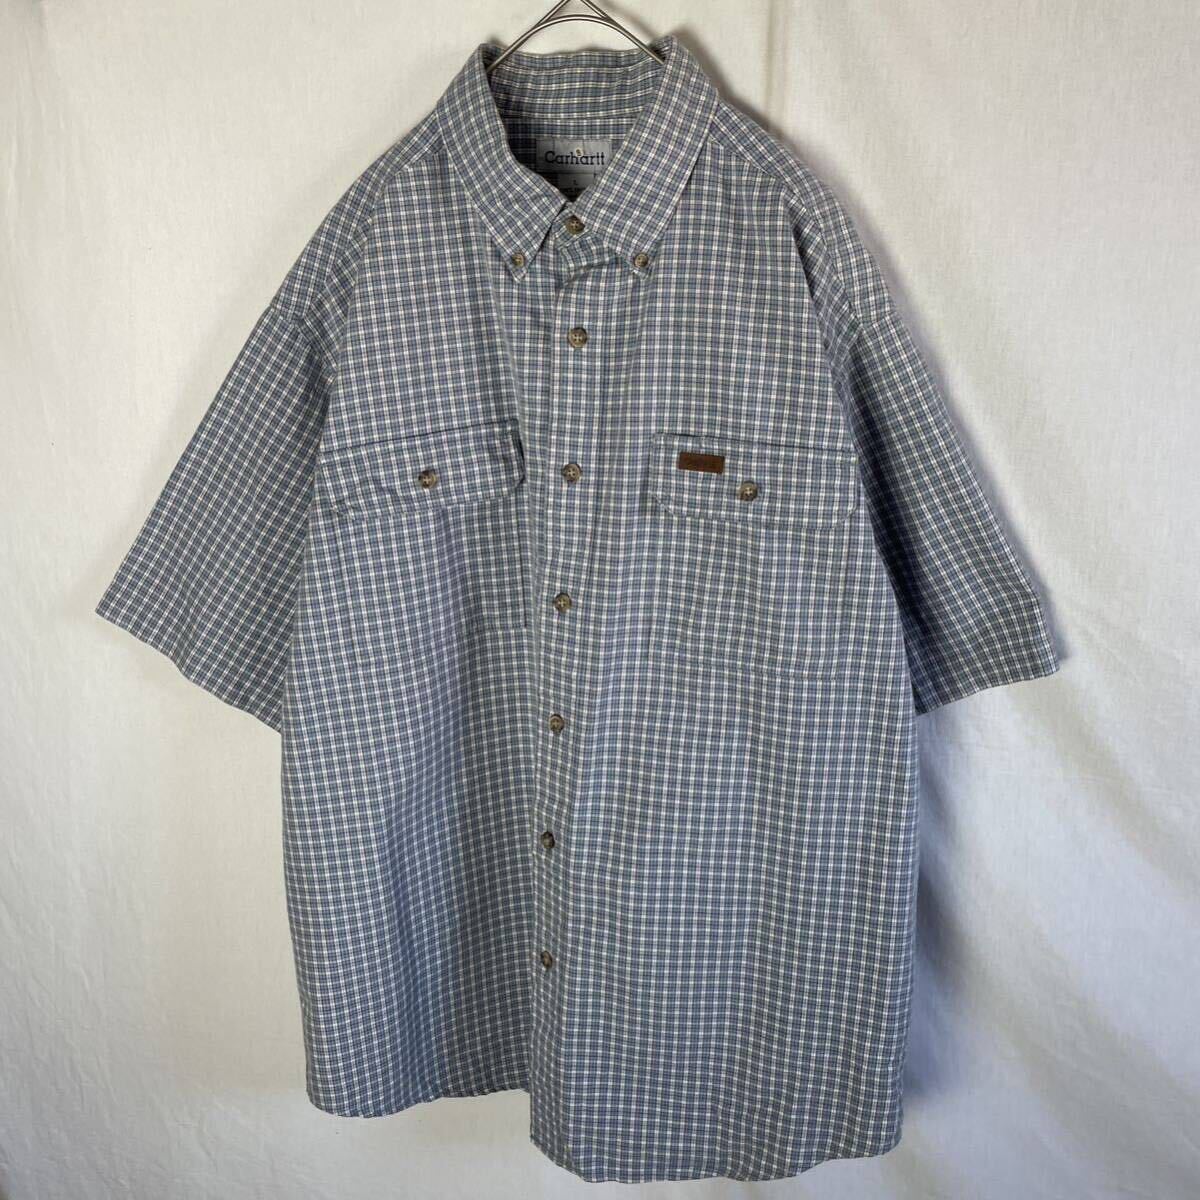 カーハート 半袖チェックシャツ ボタンダウン 古着 Lサイズ ブルーグレー の画像1